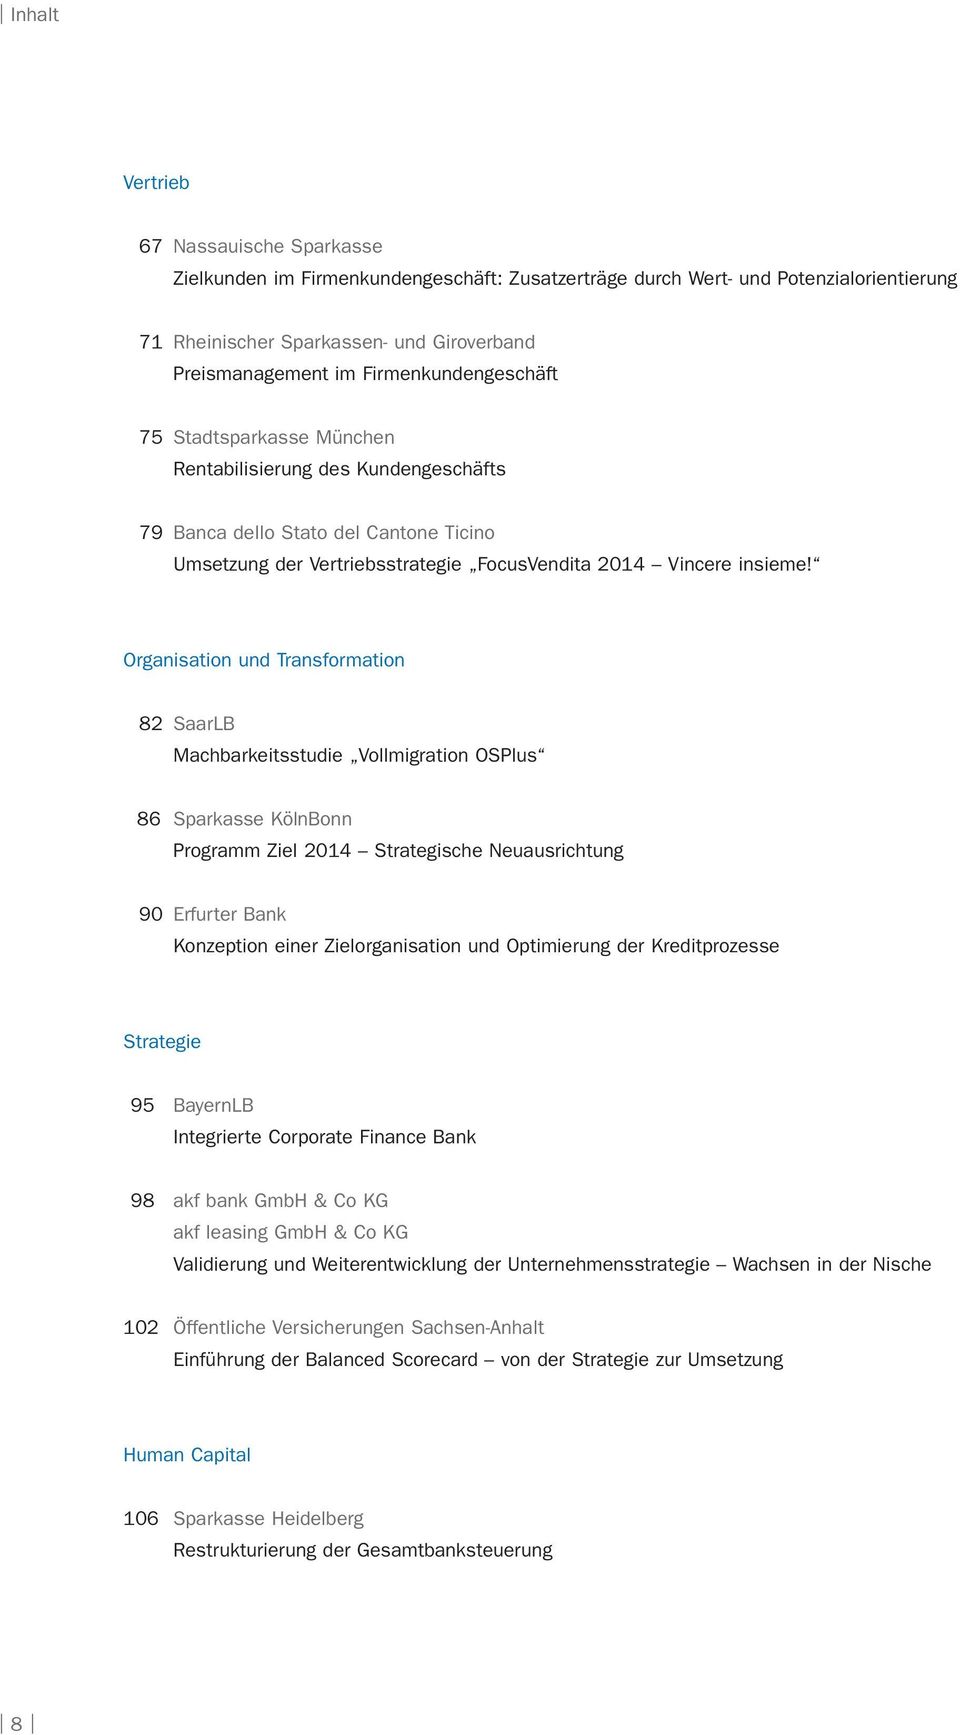 Organisation und Transformation 82 SaarLB Machbarkeitsstudie Vollmigration OSPlus 86 Sparkasse KölnBonn Programm Ziel 2014 Strategische Neuausrichtung 90 Erfurter Bank Konzeption einer